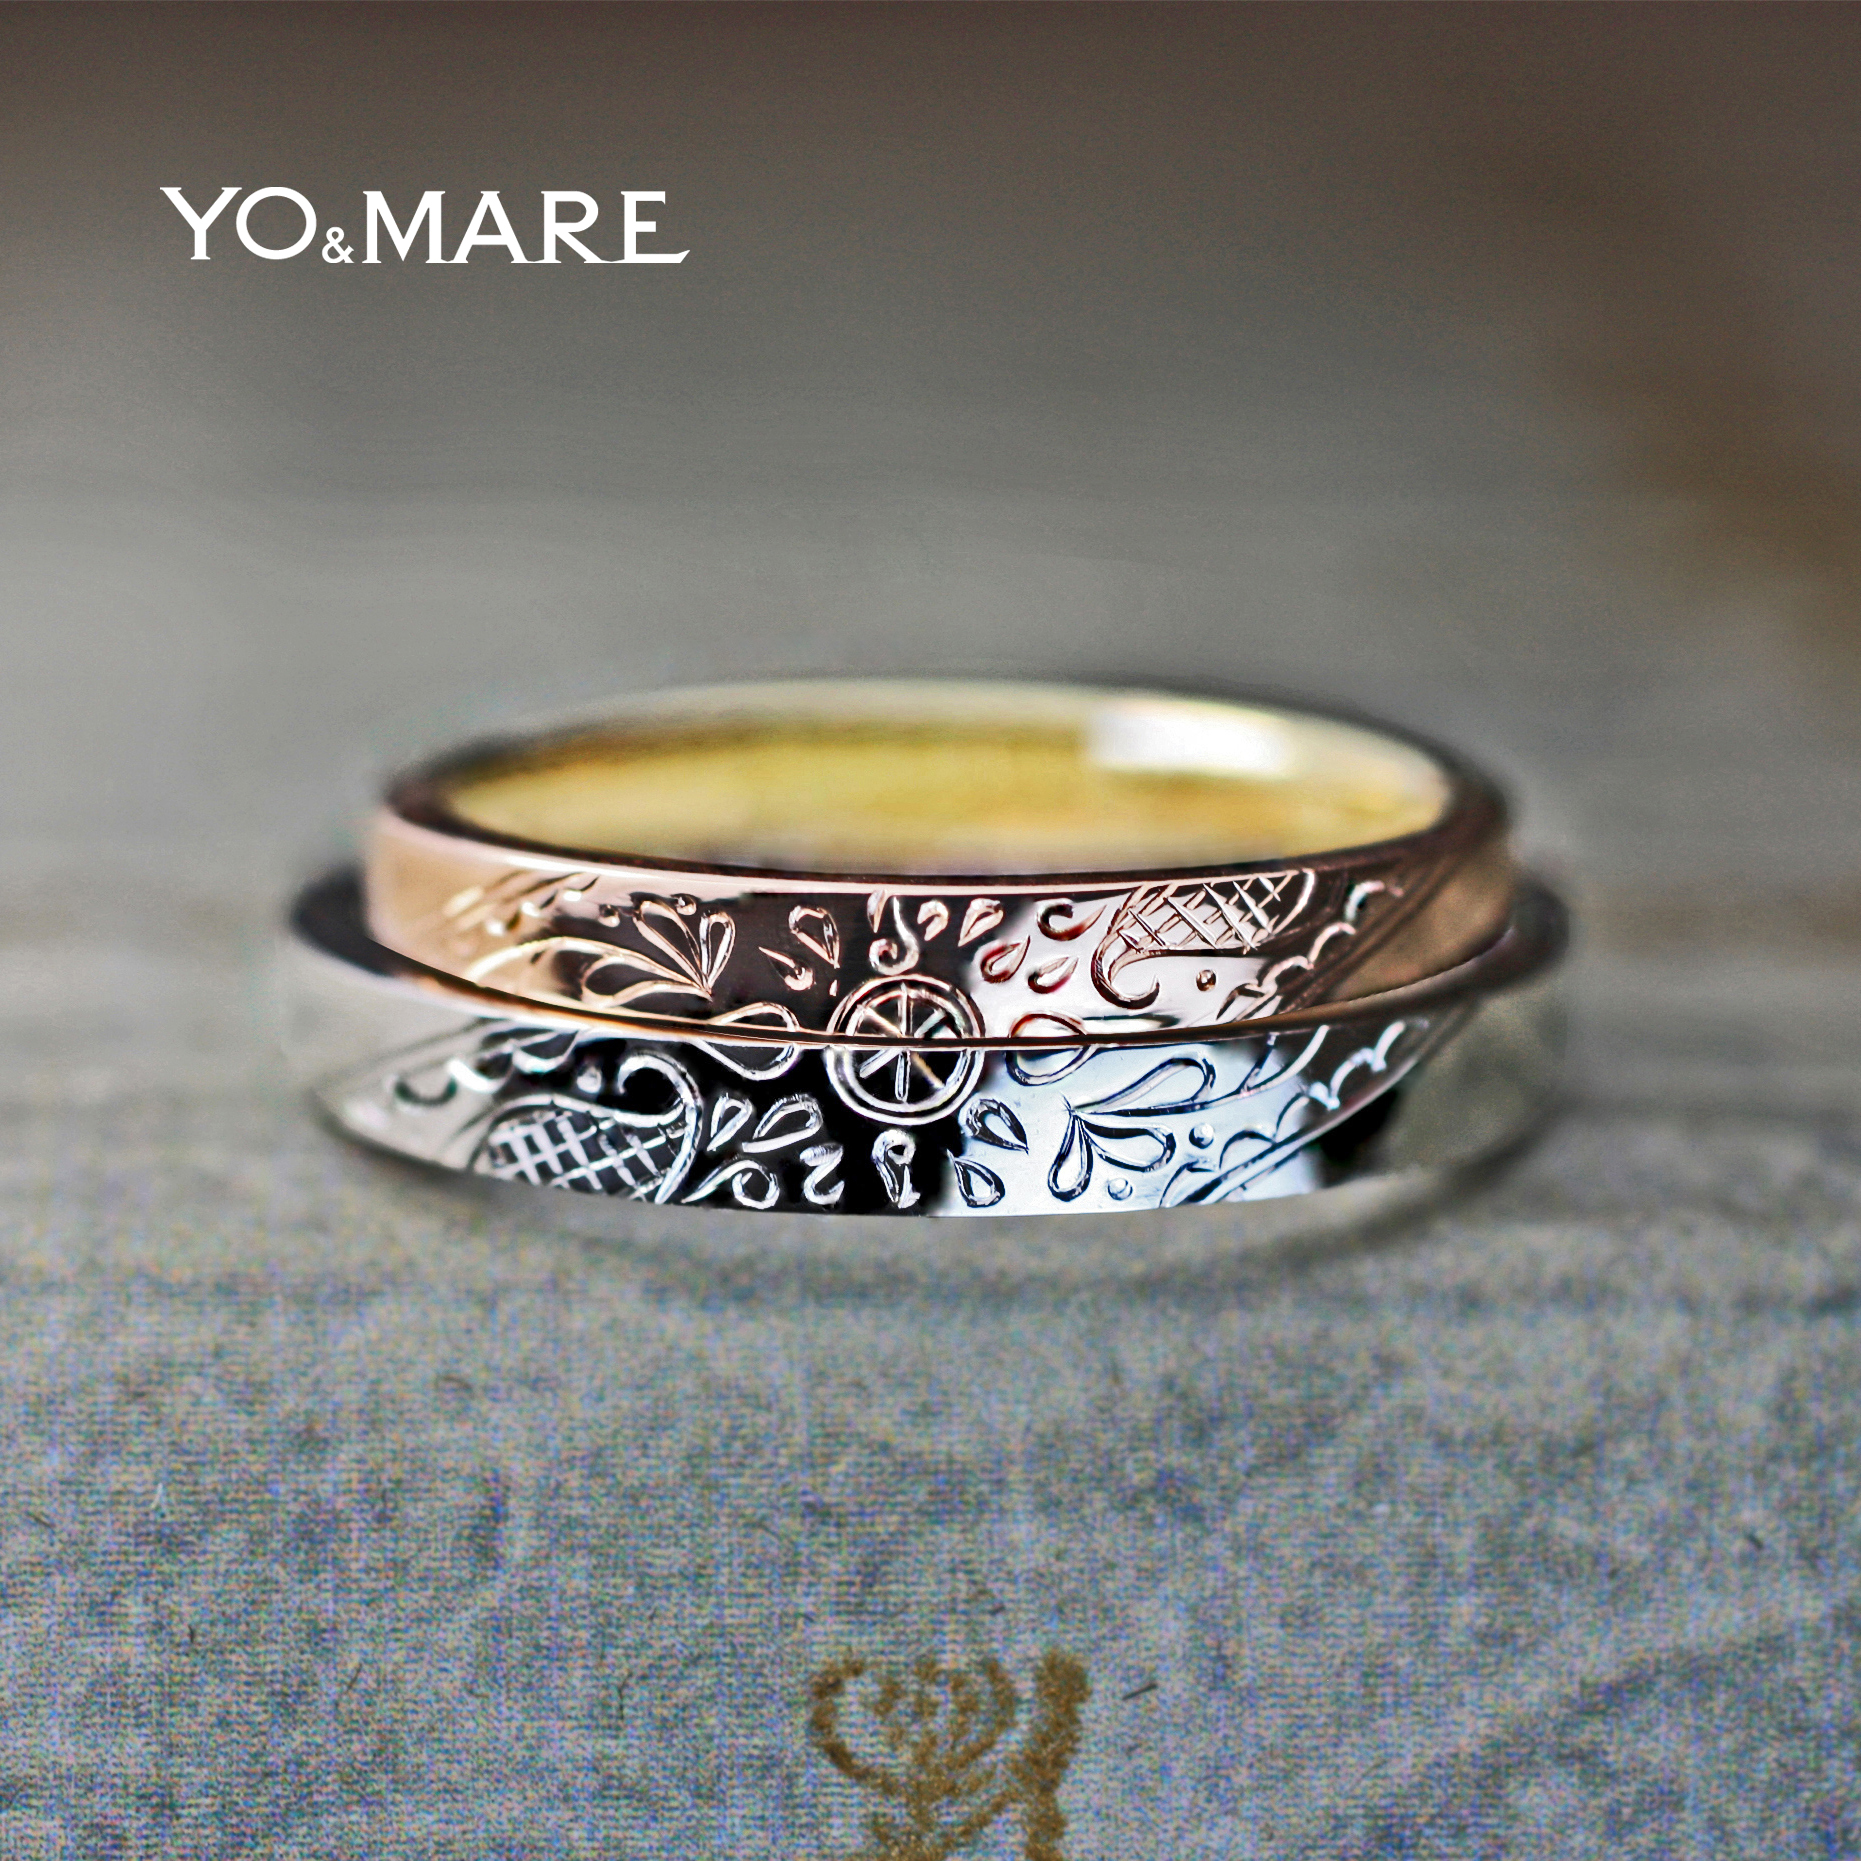 二本重ねて個性的な太陽のモチーフを作った結婚指輪オーダー作品 Yo Mare 千葉 柏の結婚指輪オーダー専門店ヨーアンドマーレ